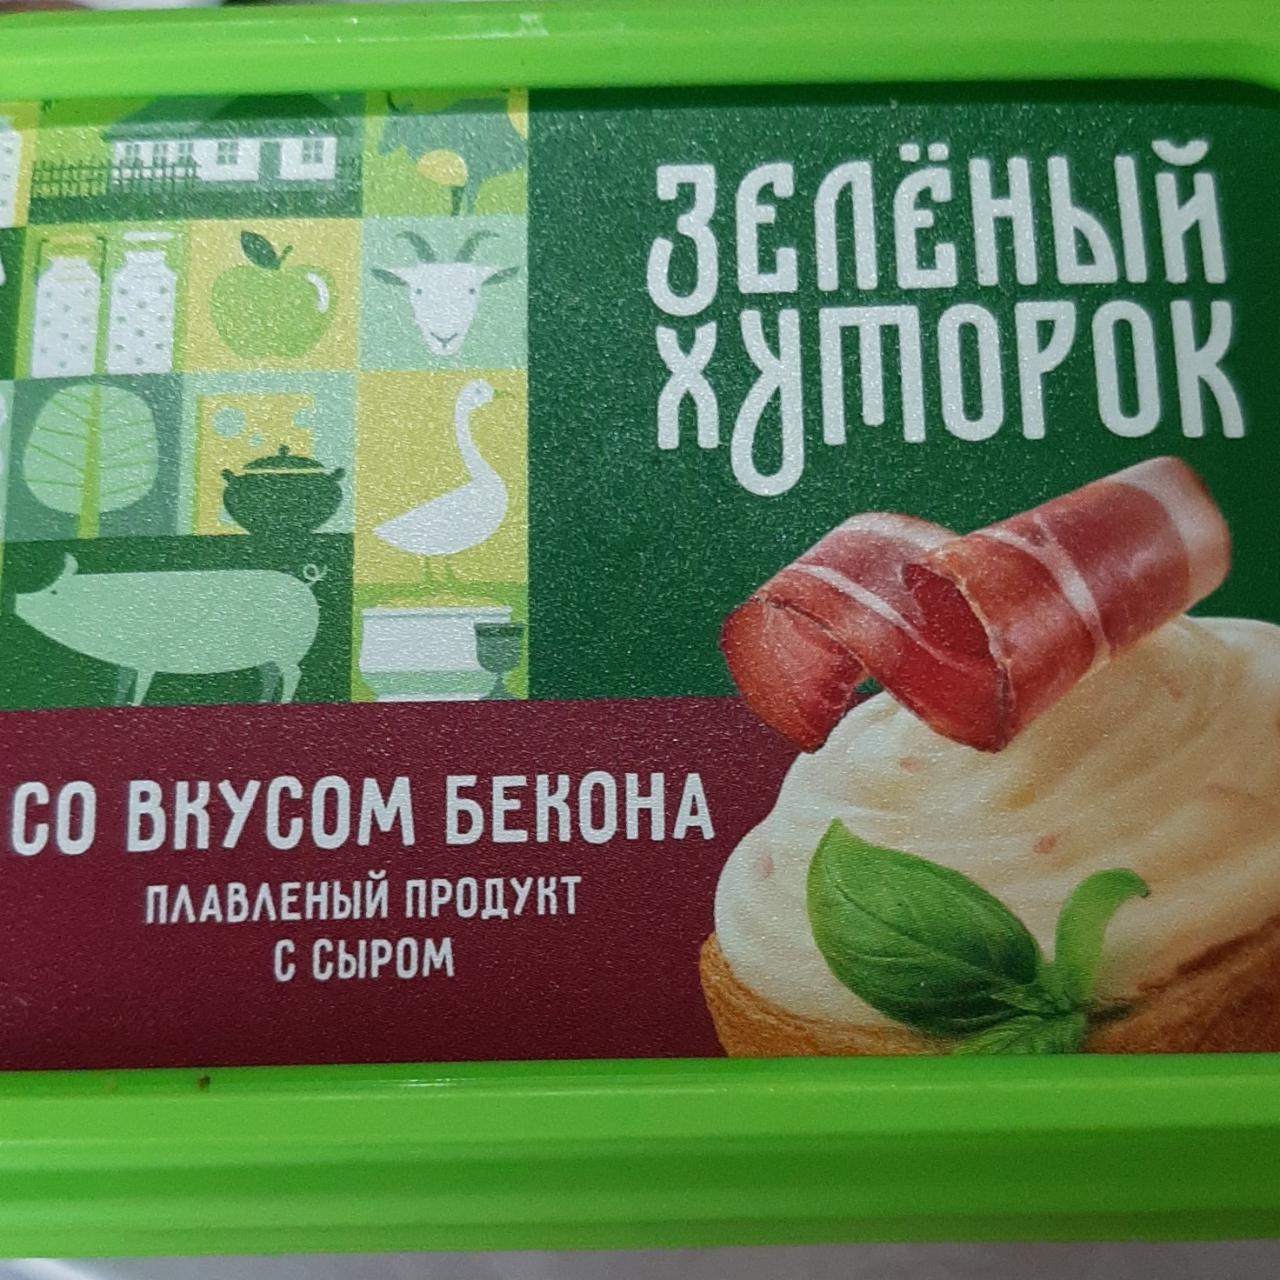 Фото - Плавленый продукт с сыром со вкусом бекона Зелёный хуторок